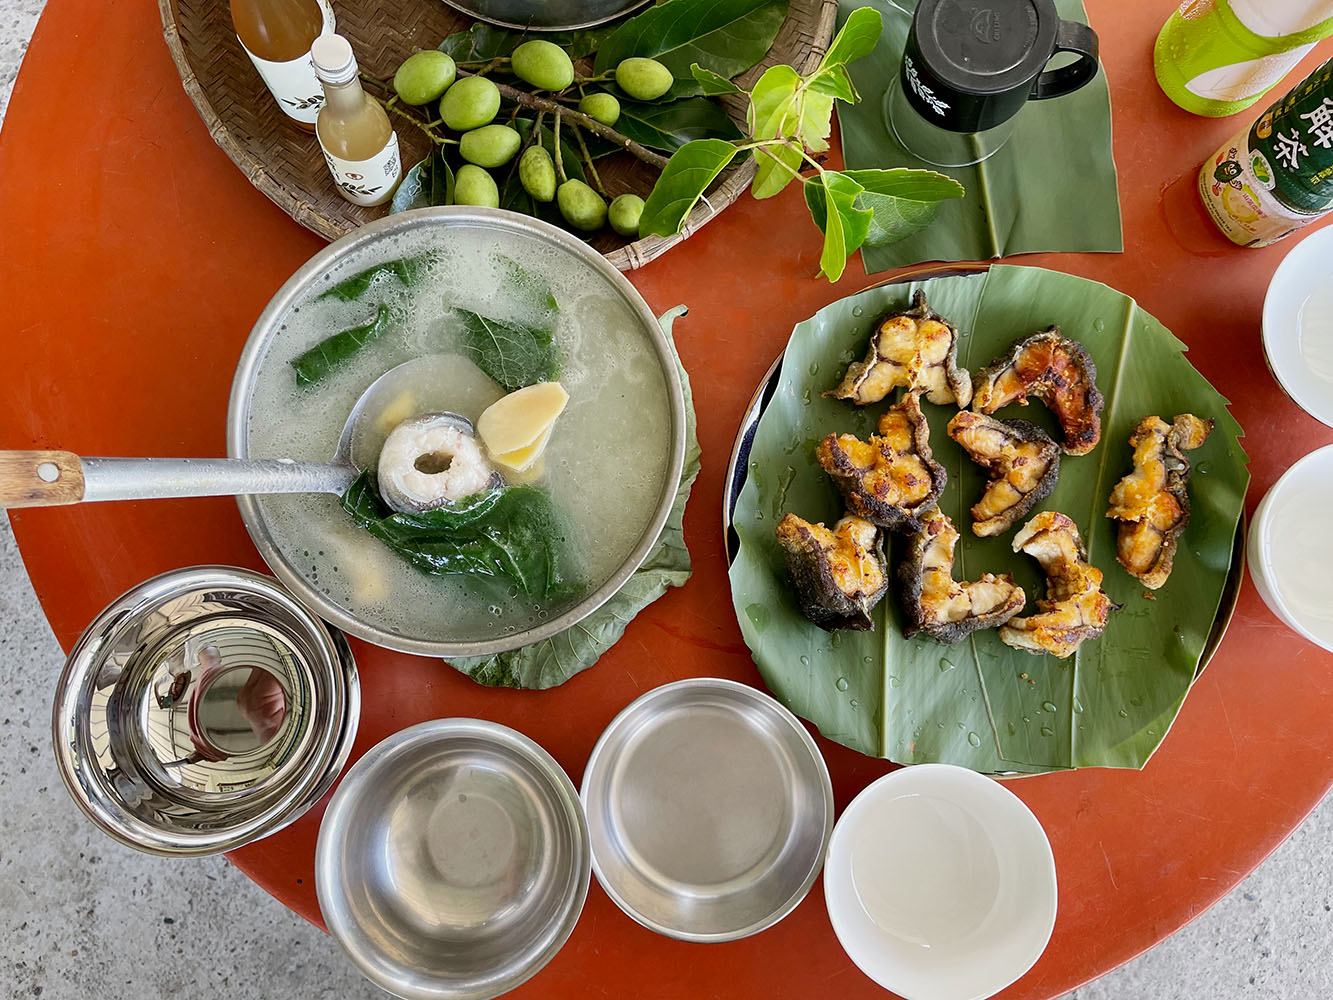 用尤家生態農場養殖的花鰻來做料理，左為大圓葉胡椒鰻魚湯，右為乾煎鰻魚。左上方為農場特產的橄欖、與自製的橄欖酵素。